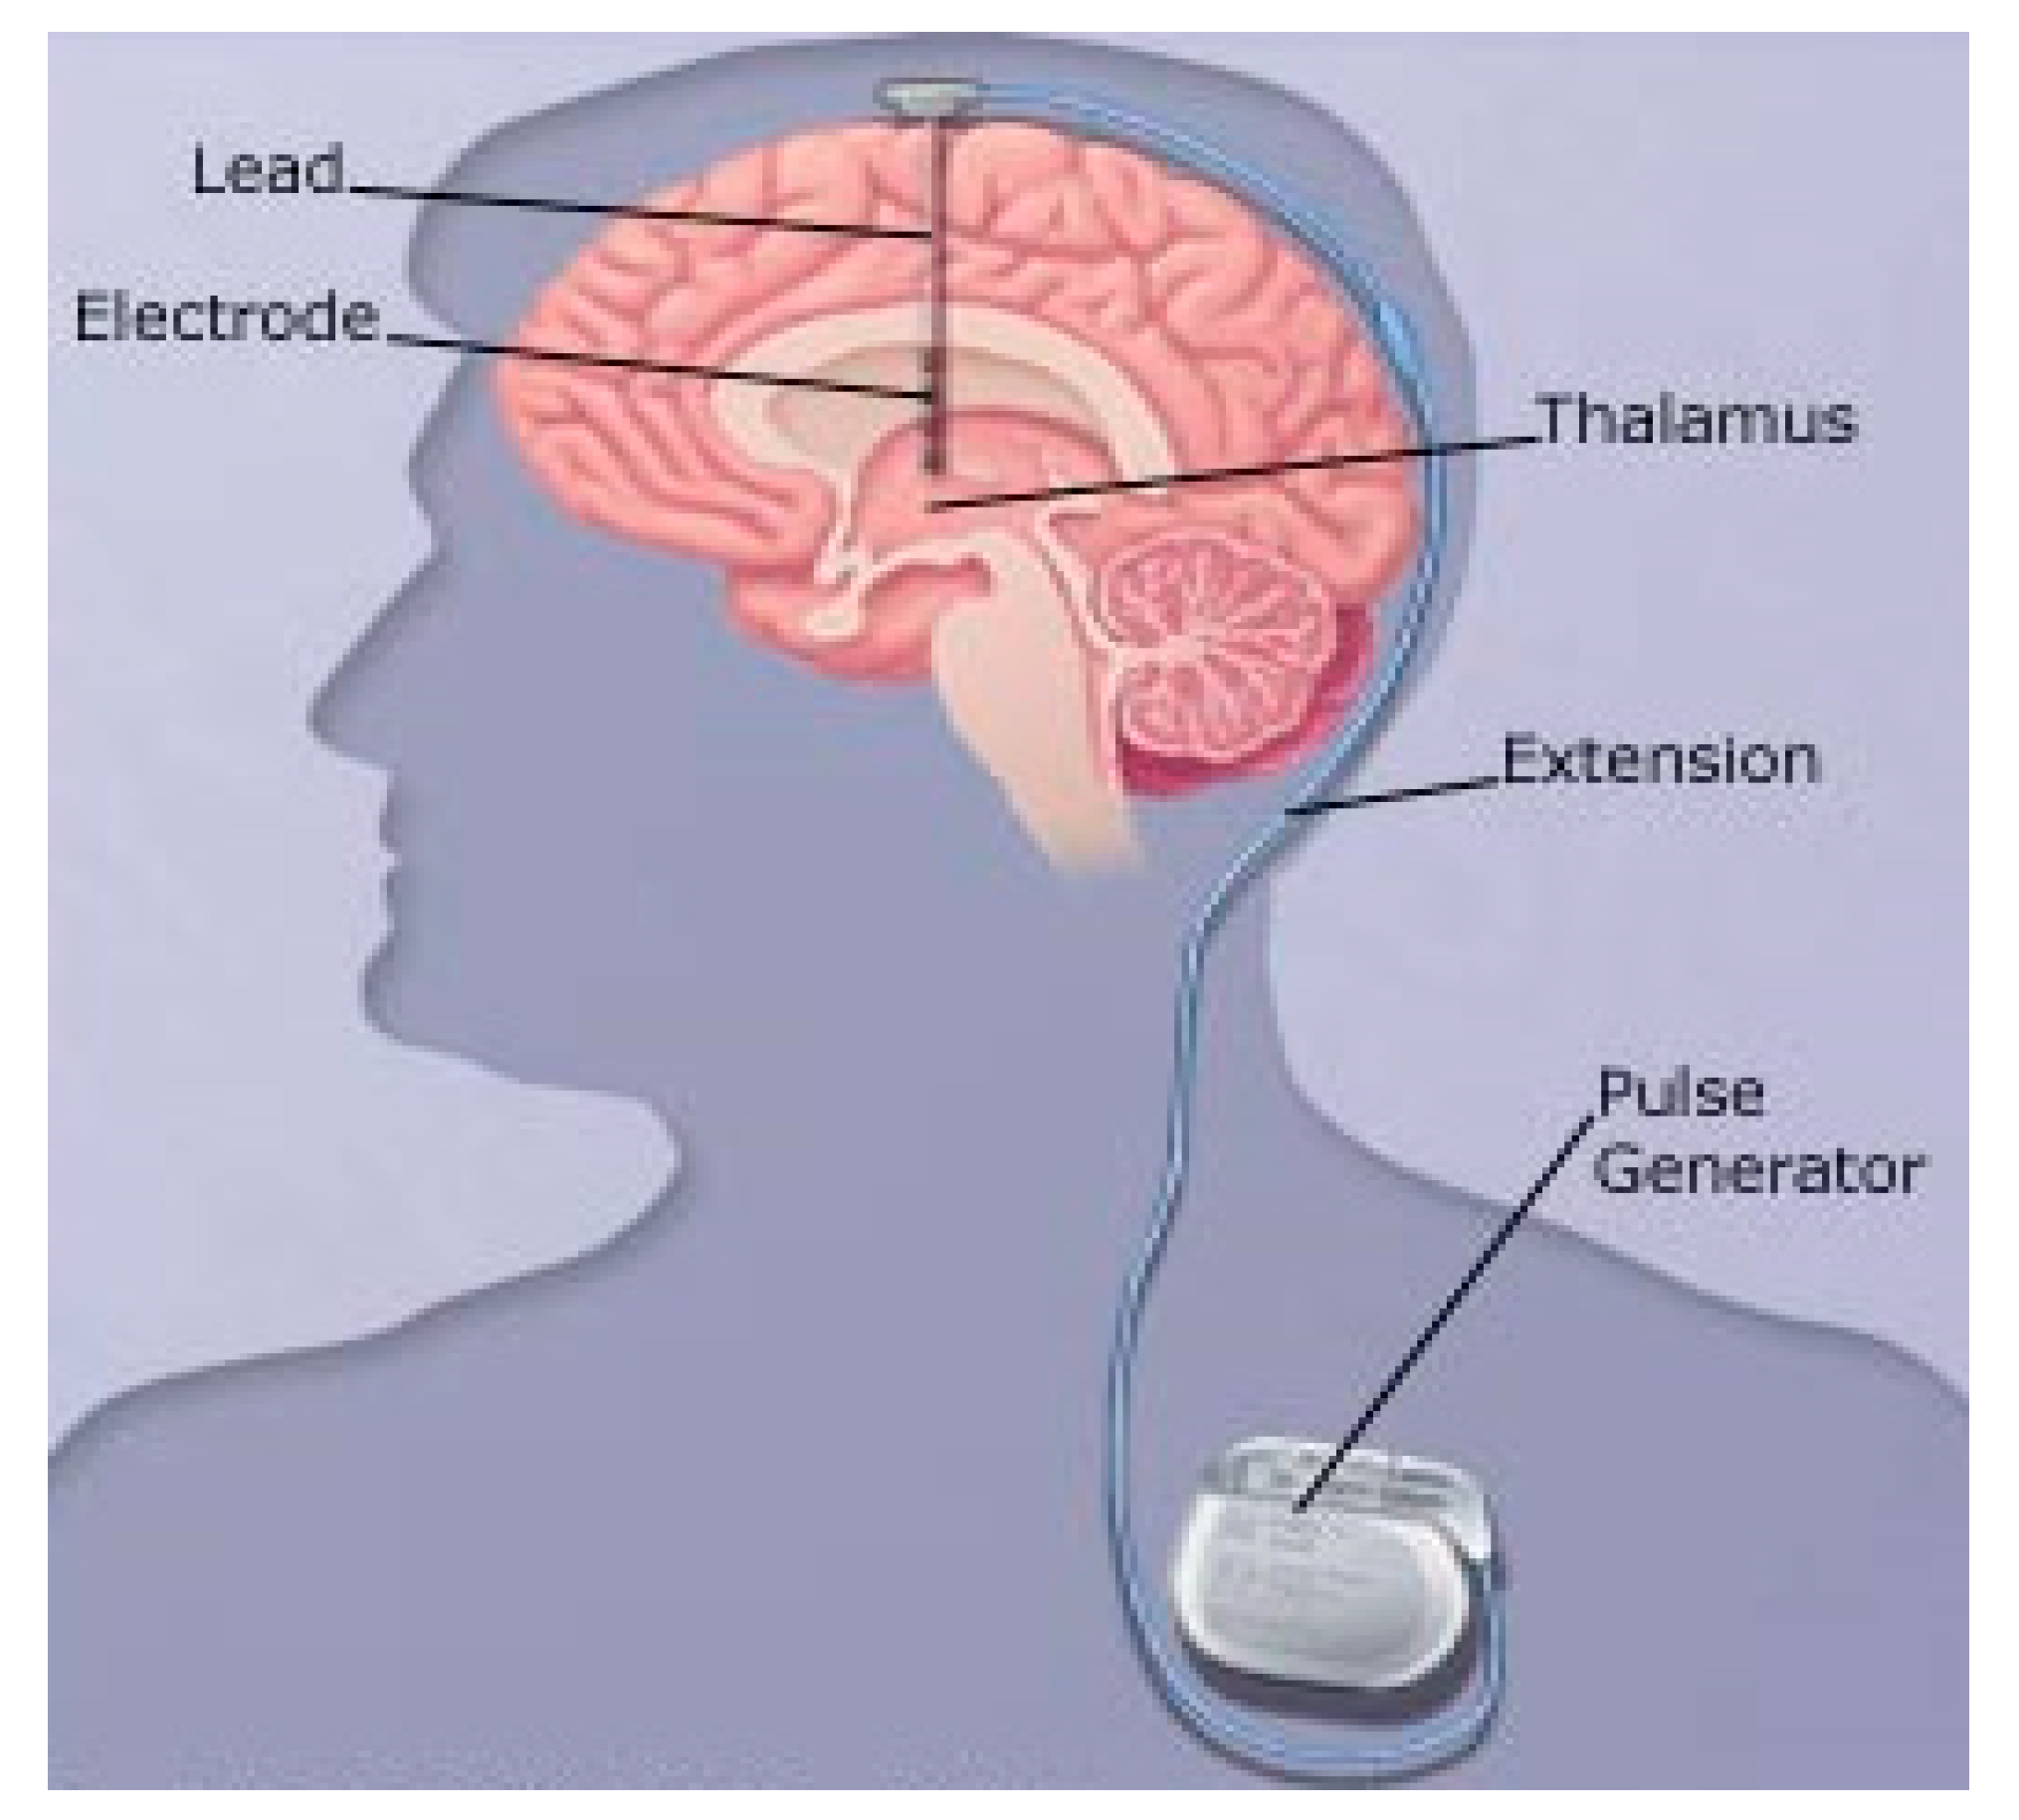 Deep brain. Глубокая стимуляция мозга при болезни Паркинсона. Электроды в головной мозг. Имплантация электродов в мозг. Нейростимулятор головного мозга.